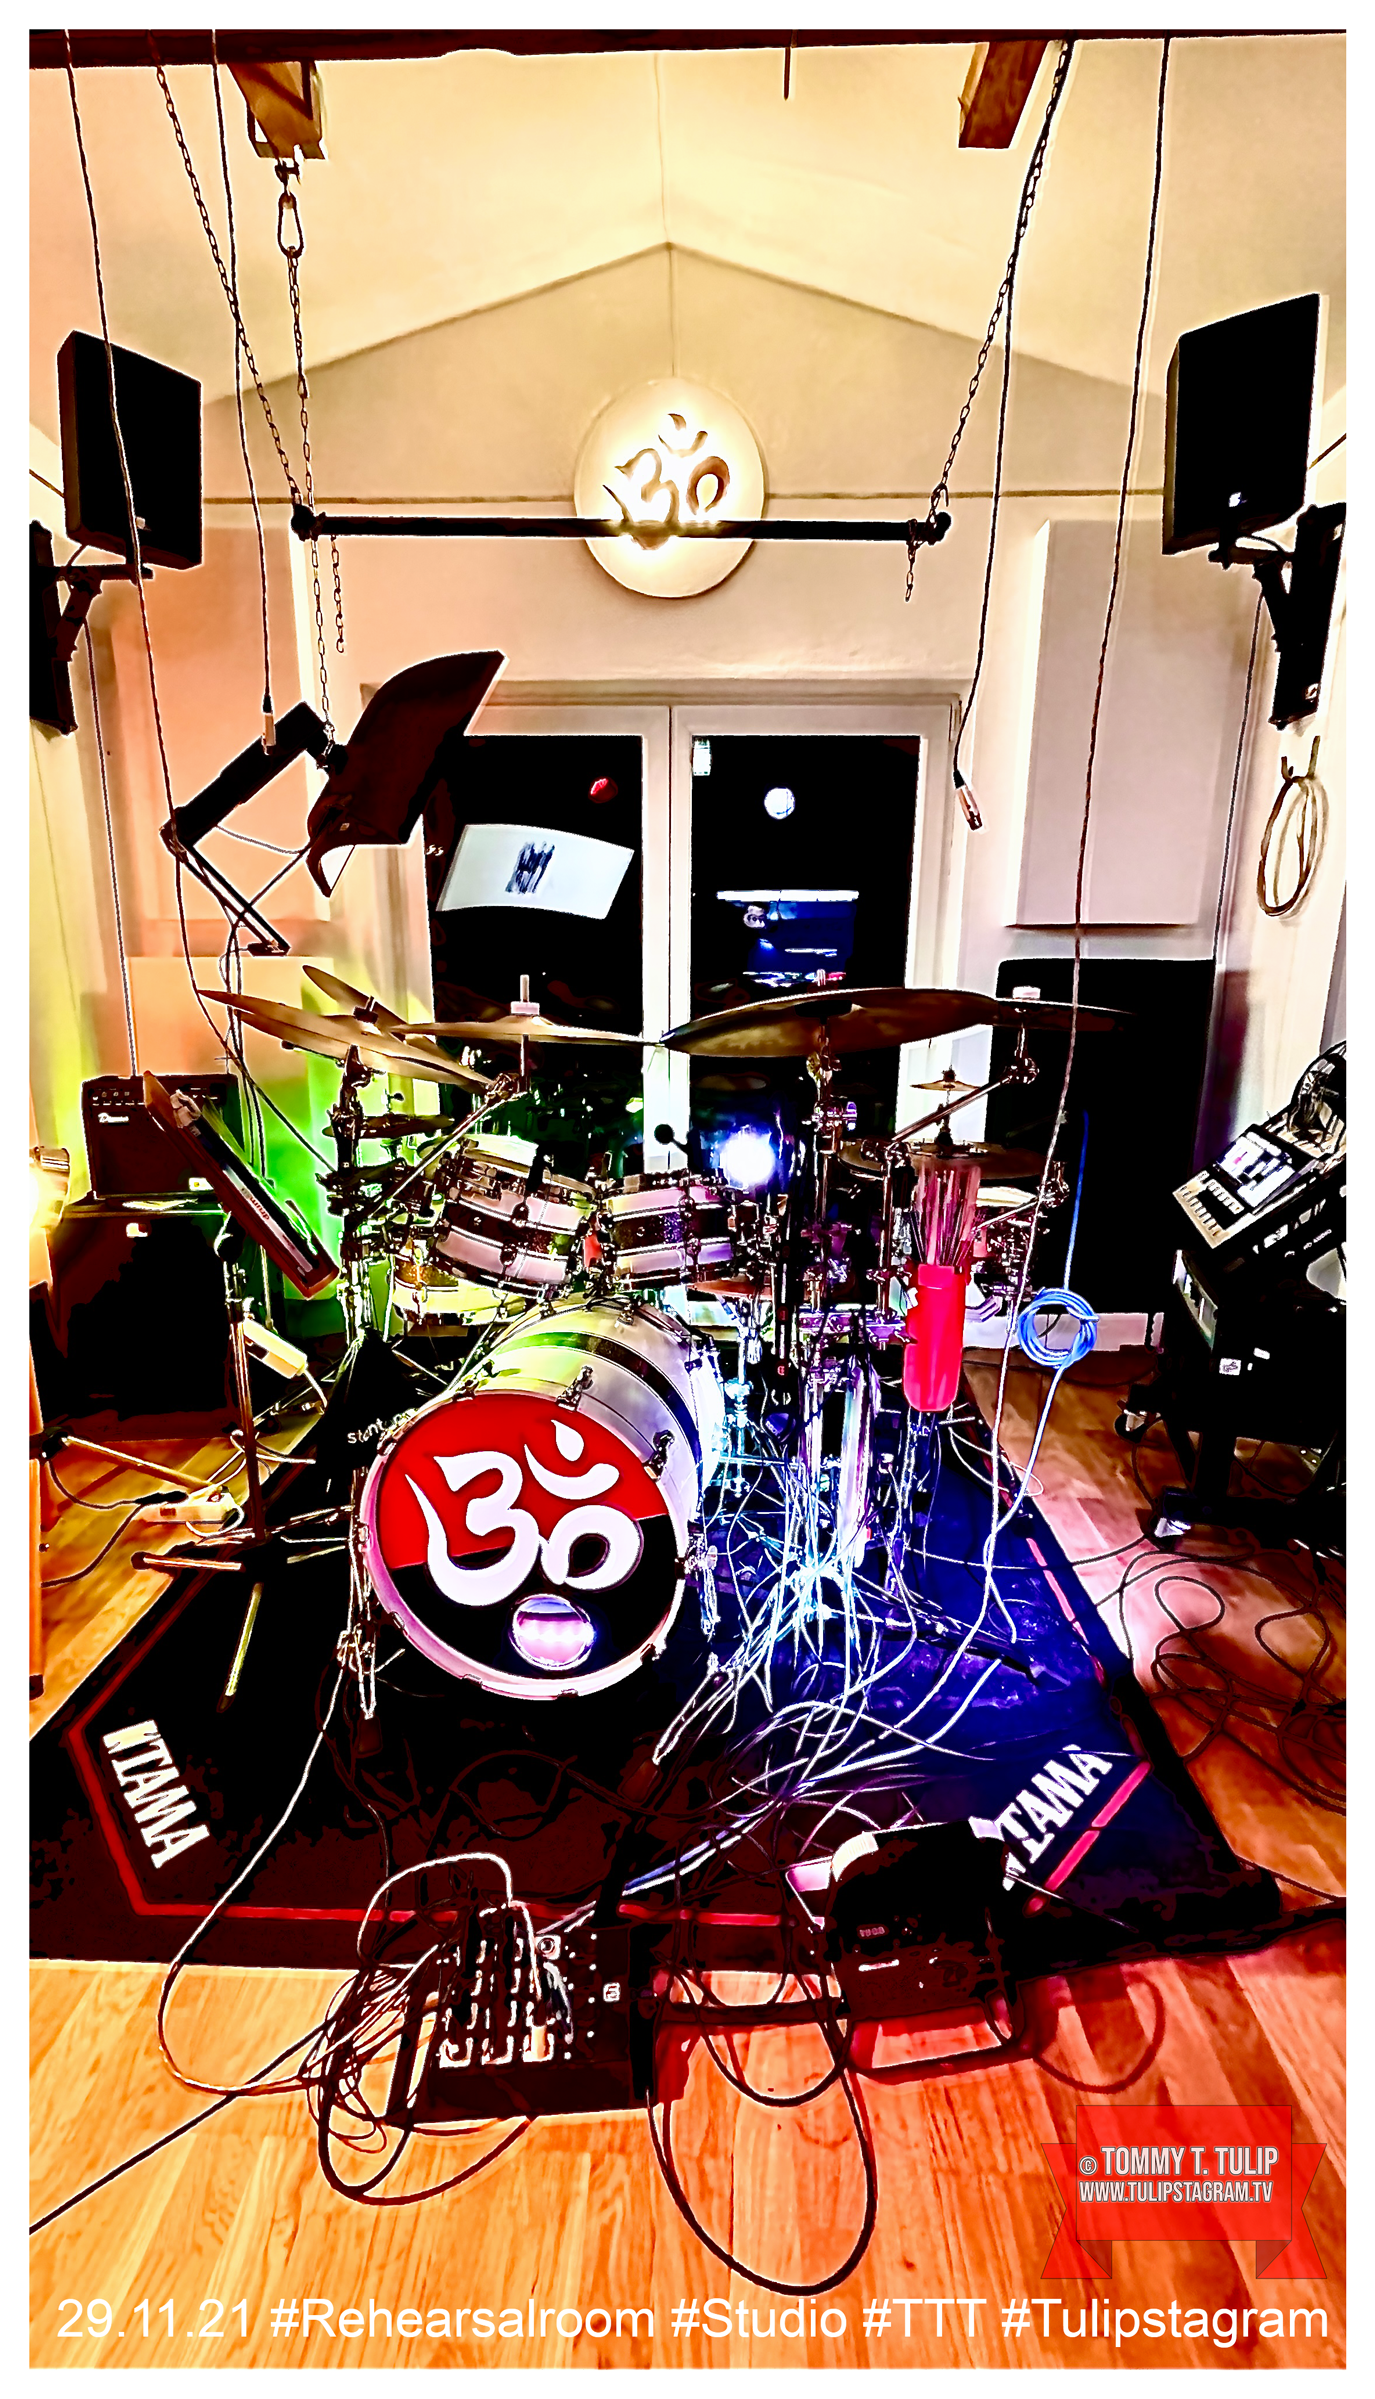 29.11.21 #Rehearsalroom #Studio #TTT #Tulipstagram